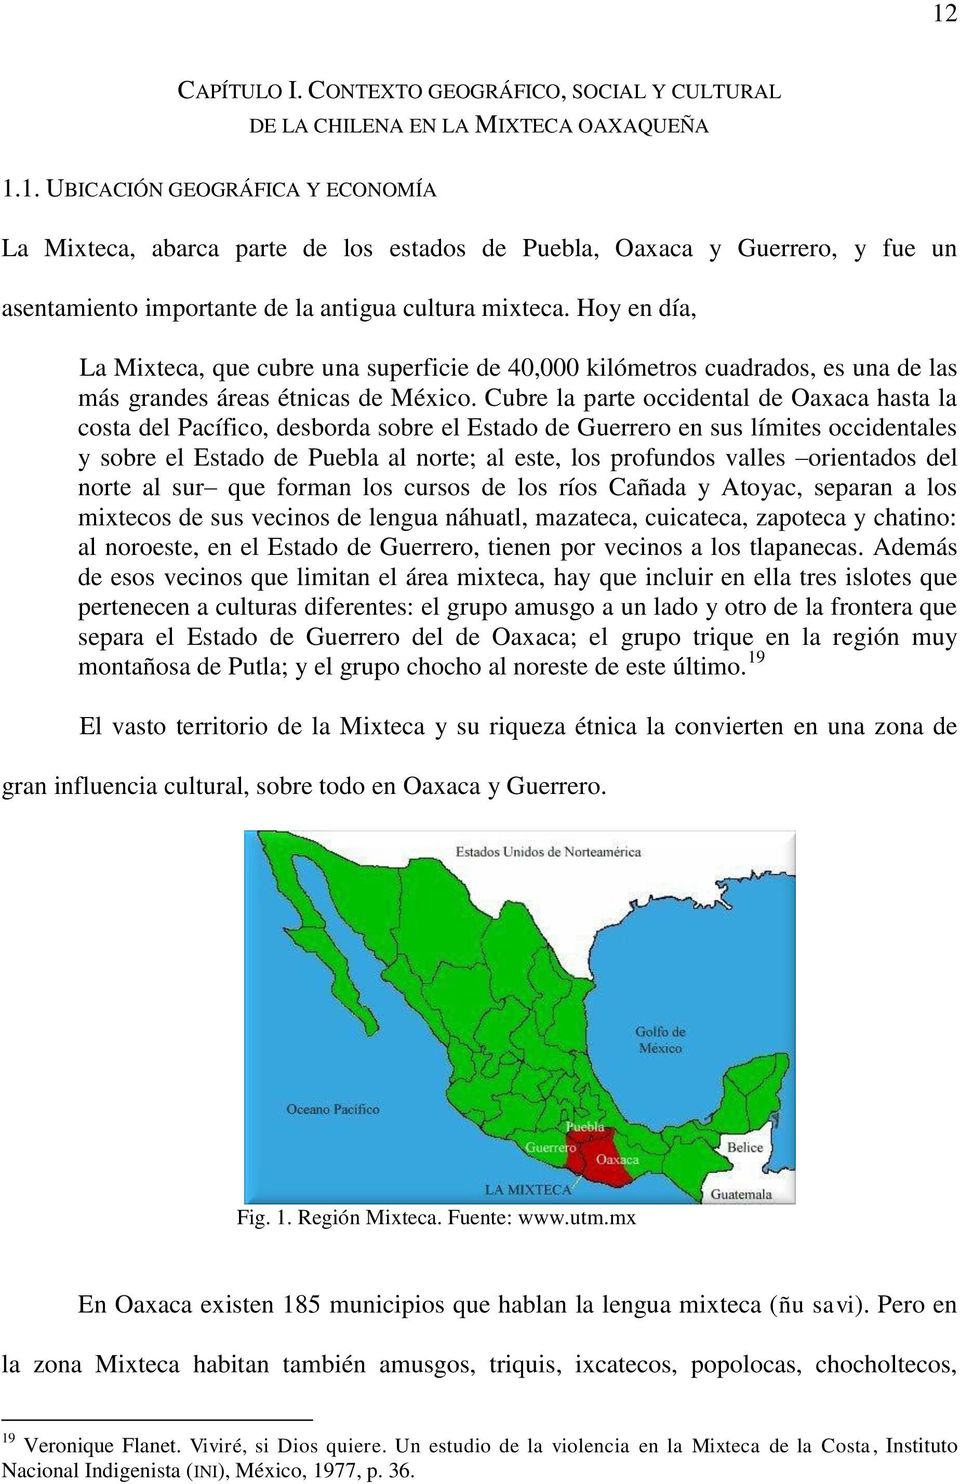 Cubre la parte occidental de Oaxaca hasta la costa del Pacífico, desborda sobre el Estado de Guerrero en sus límites occidentales y sobre el Estado de Puebla al norte; al este, los profundos valles